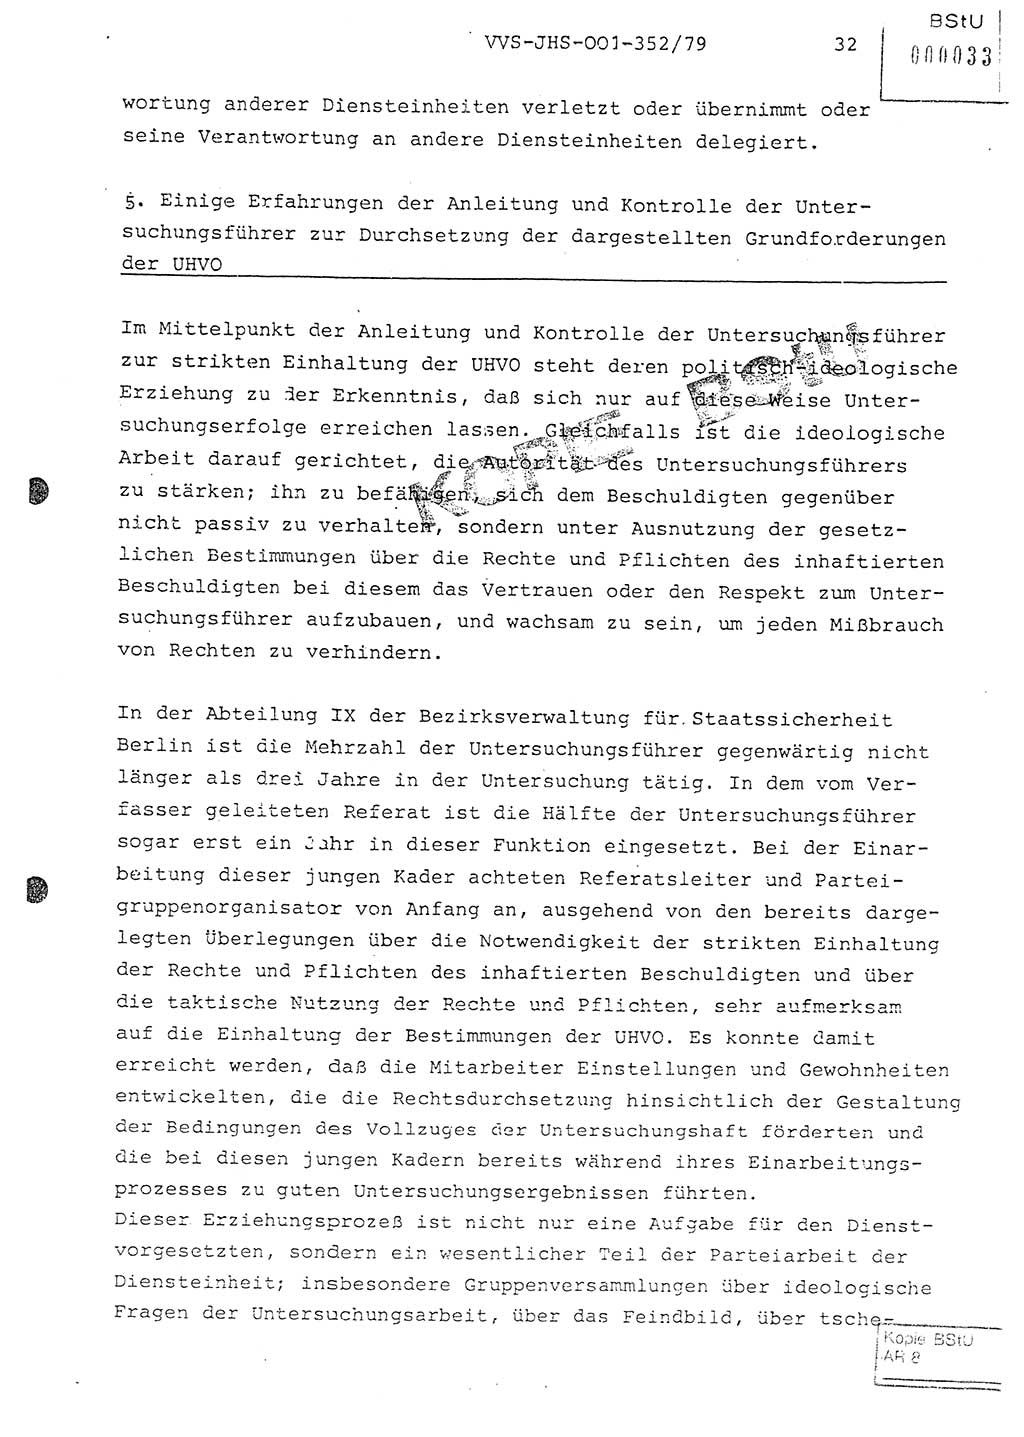 Diplomarbeit Hauptmann Peter Wittum (BV Bln. Abt. HA Ⅸ), Ministerium für Staatssicherheit (MfS) [Deutsche Demokratische Republik (DDR)], Juristische Hochschule (JHS), Vertrauliche Verschlußsache (VVS) o001-352/79, Potsdam 1979, Seite 32 (Dipl.-Arb. MfS DDR JHS VVS o001-352/79 1979, S. 32)